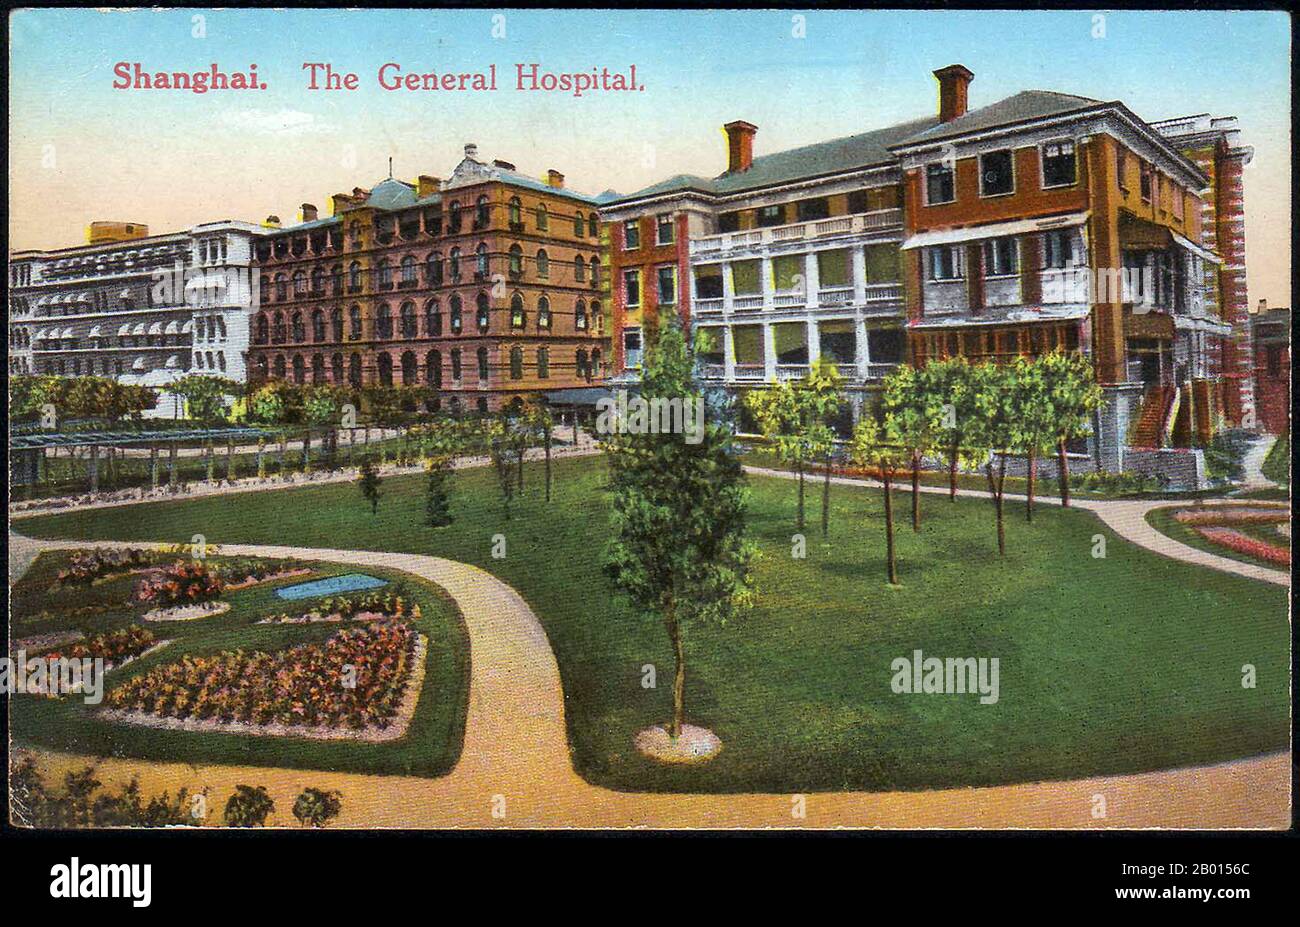 China: Shanghai General Hospital, c. 1920. Eine Postkarte des Allgemeinen Krankenhauses von Shanghai und des Geländes. Stockfoto